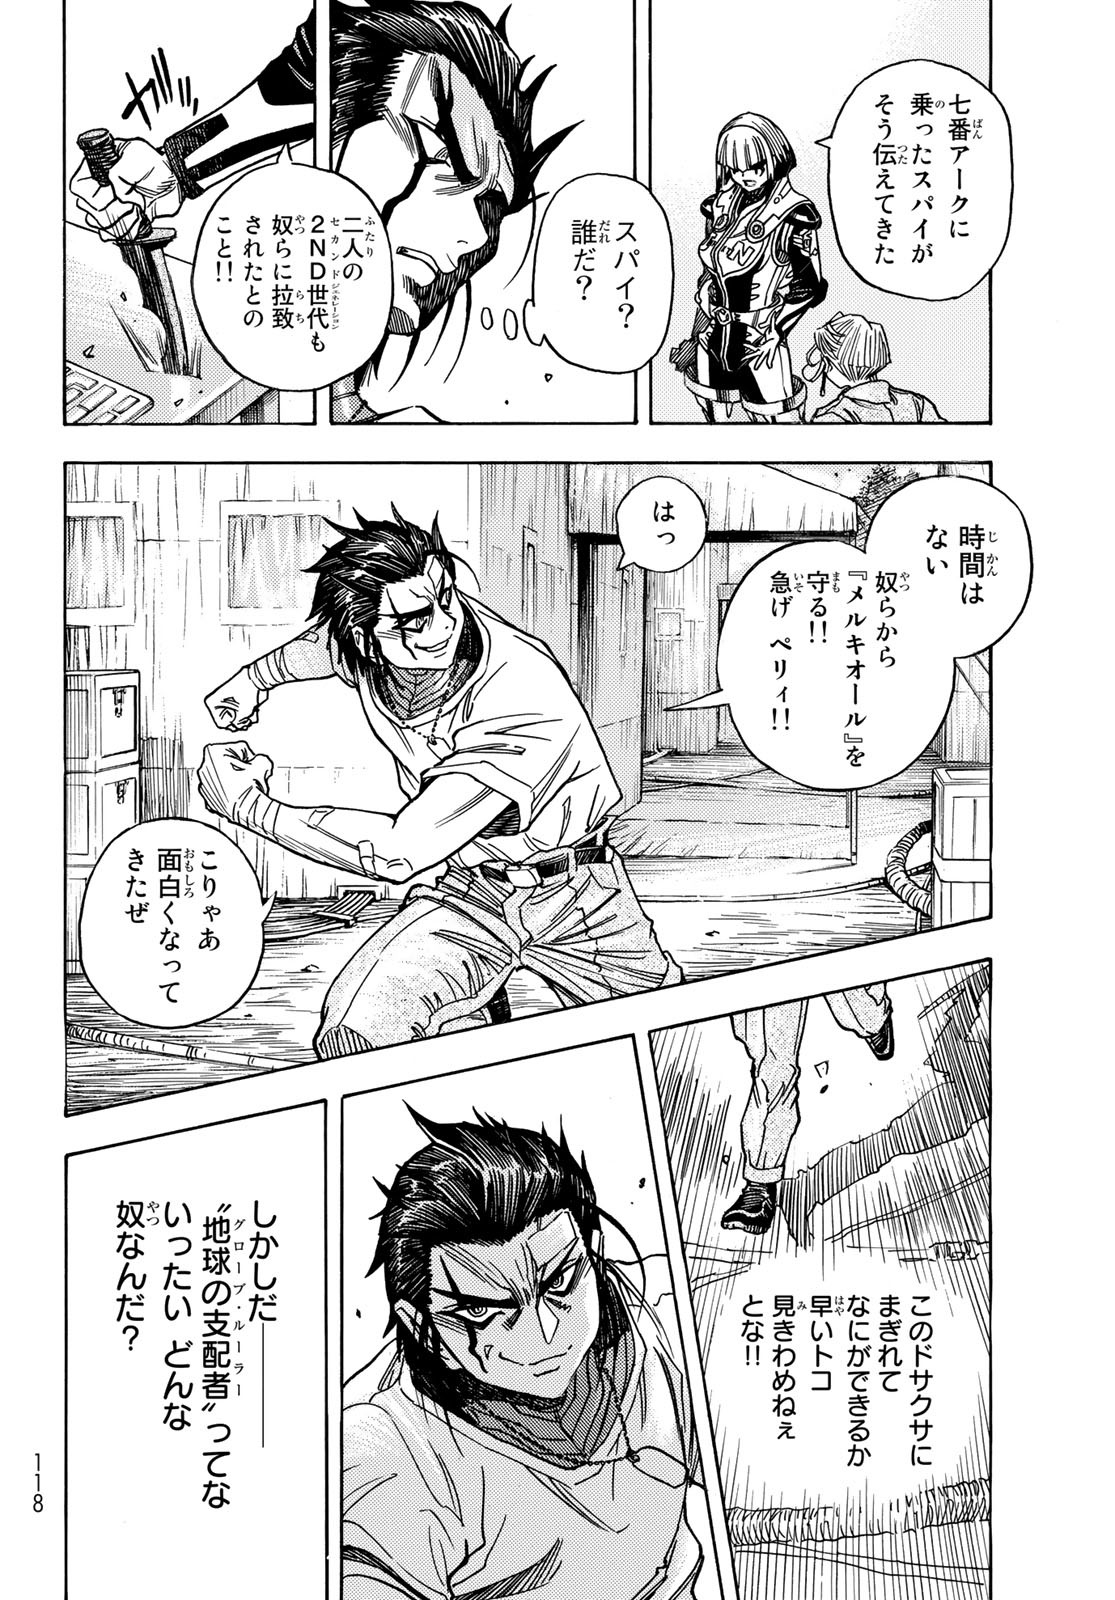 Mugou no Schnell Gear: Chikyuugai Kisouka AI - Chapter 41 - Page 16